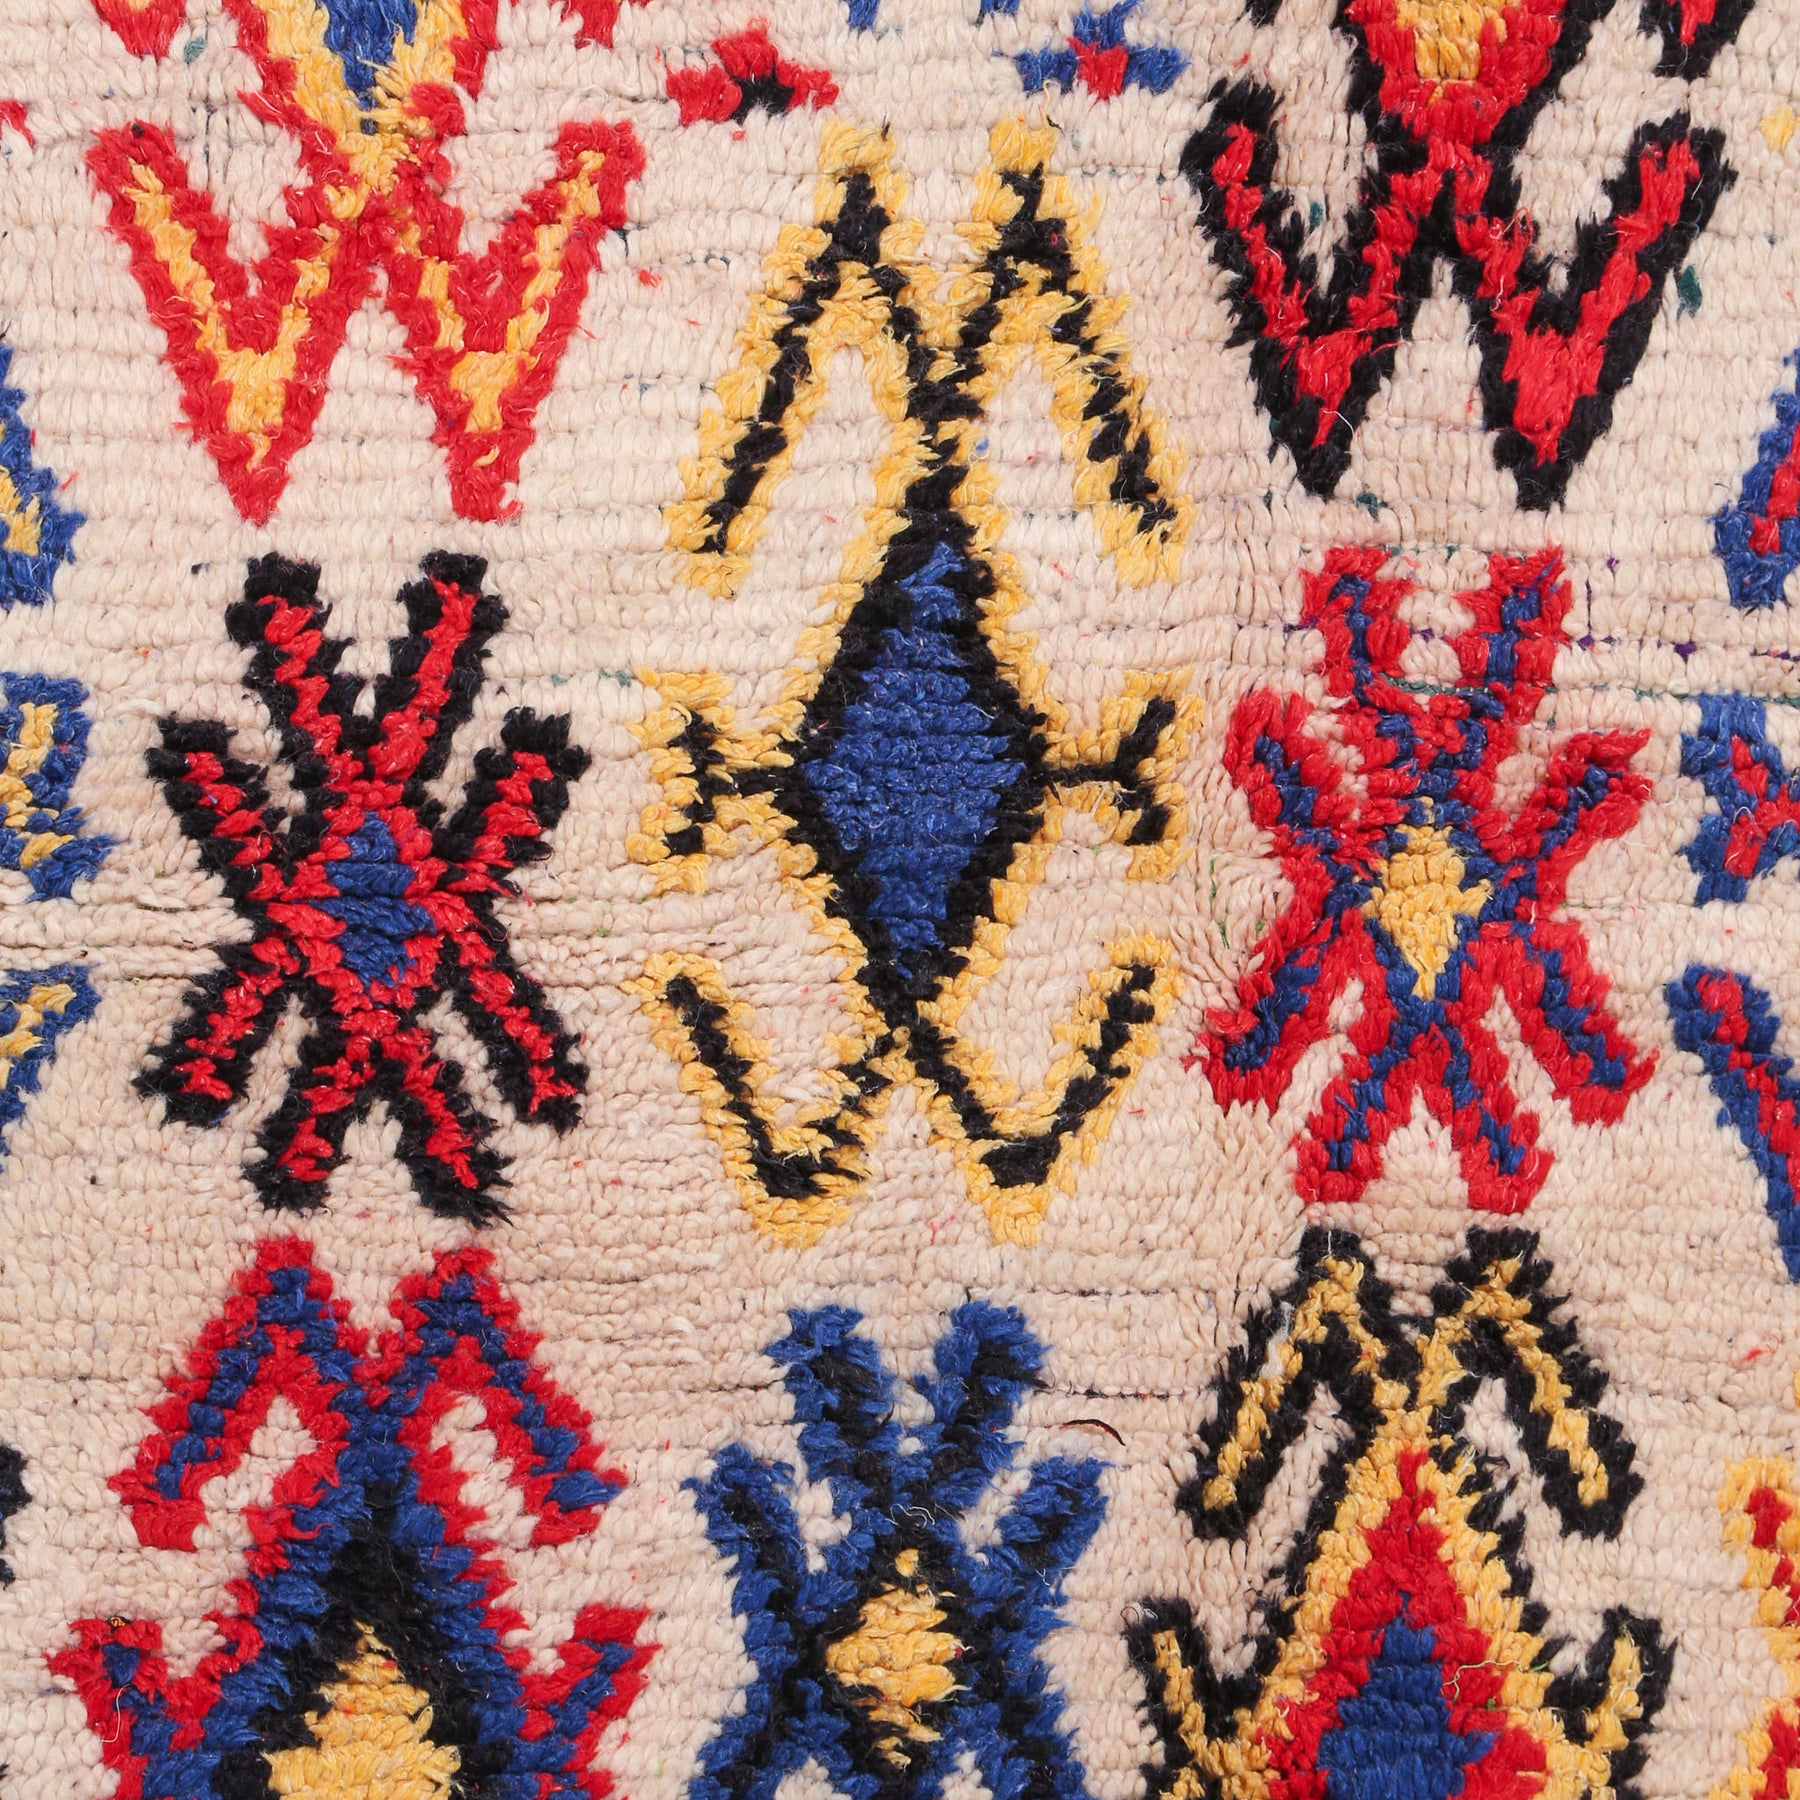 dettaglio dei simboli presenti su un tappeto azilal vintage